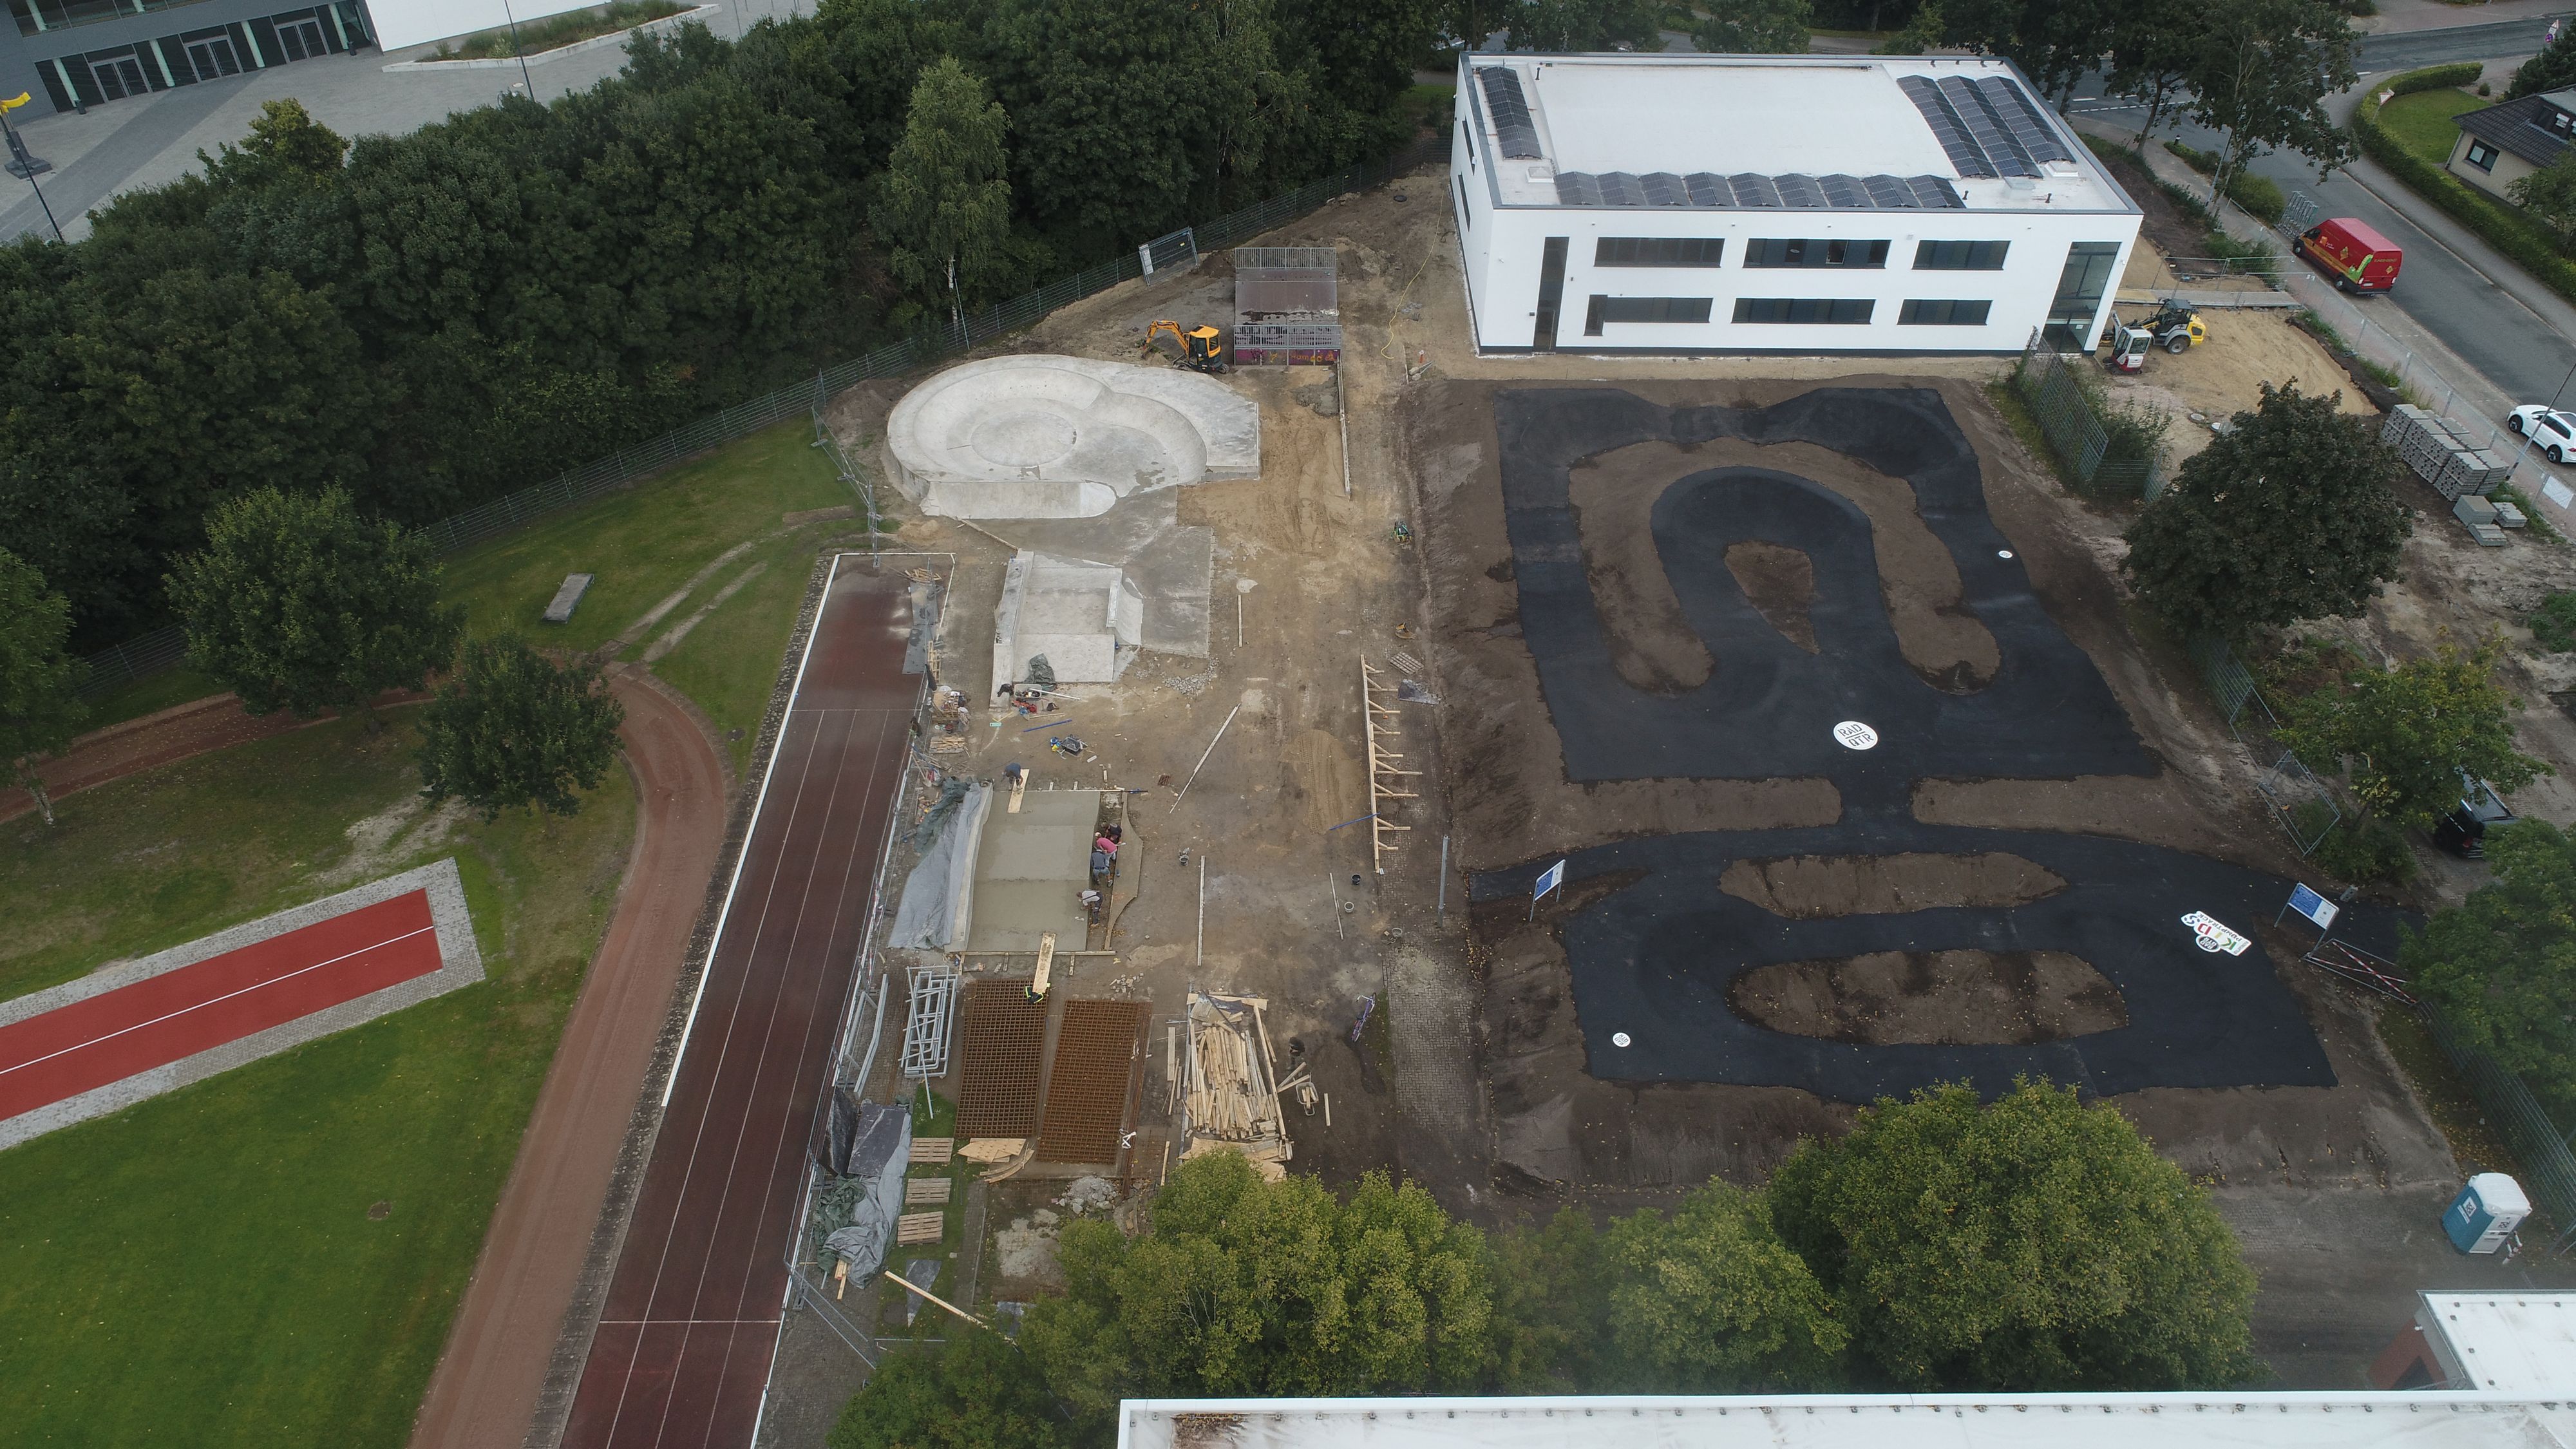 Die neue Anlage von oben: Links sind die Arbeiten an der Skateparksanierung zu sehen, rechts ist die Asphaltfläche des Pumptracks bereits fertiggestellt. Foto: RadQuartier GmbH